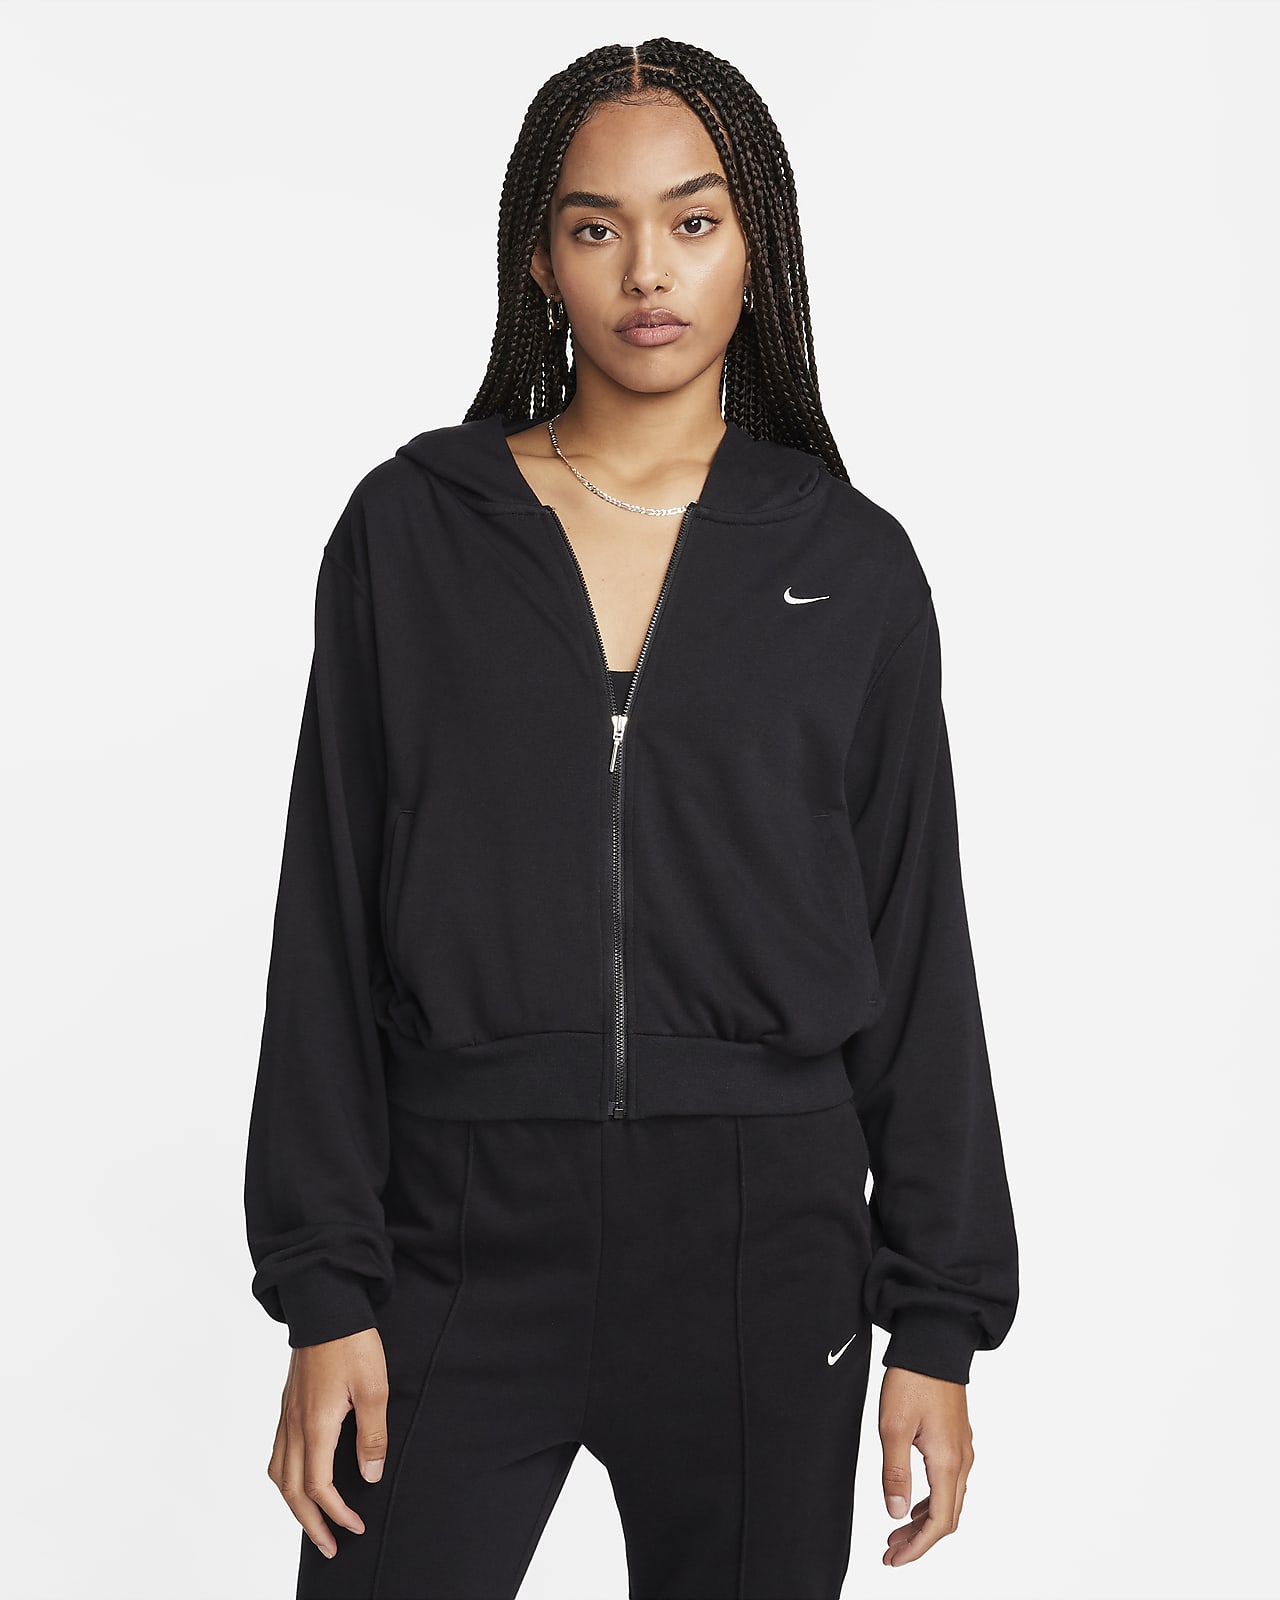 Γυναικεία μπλούζα με κουκούλα και φερμουάρ σε όλο το μήκος από ύφασμα French Terry Nike Sportswear Chill Terry